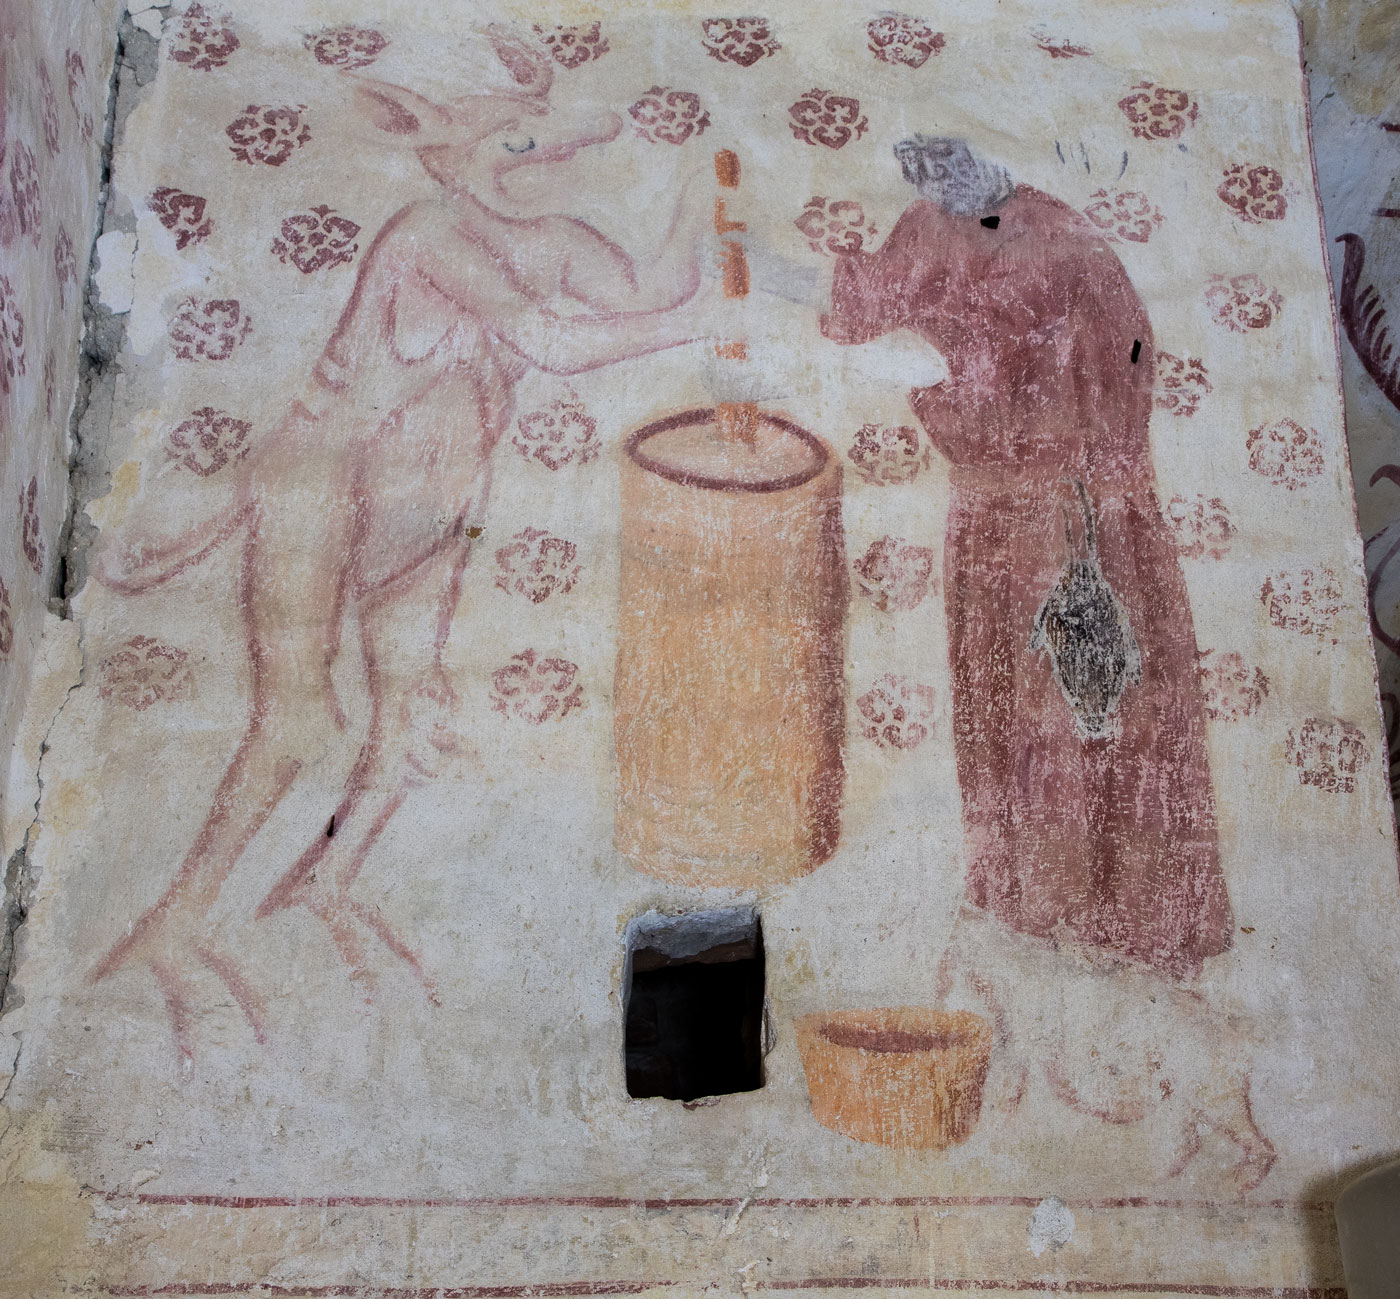 Djävul med hängbröst kärnar smör tillsammans med en gumma. En mjölkhare (bjära) sitter bredvid och spyr ut mjölk i ett kärl - Österunda kyrka